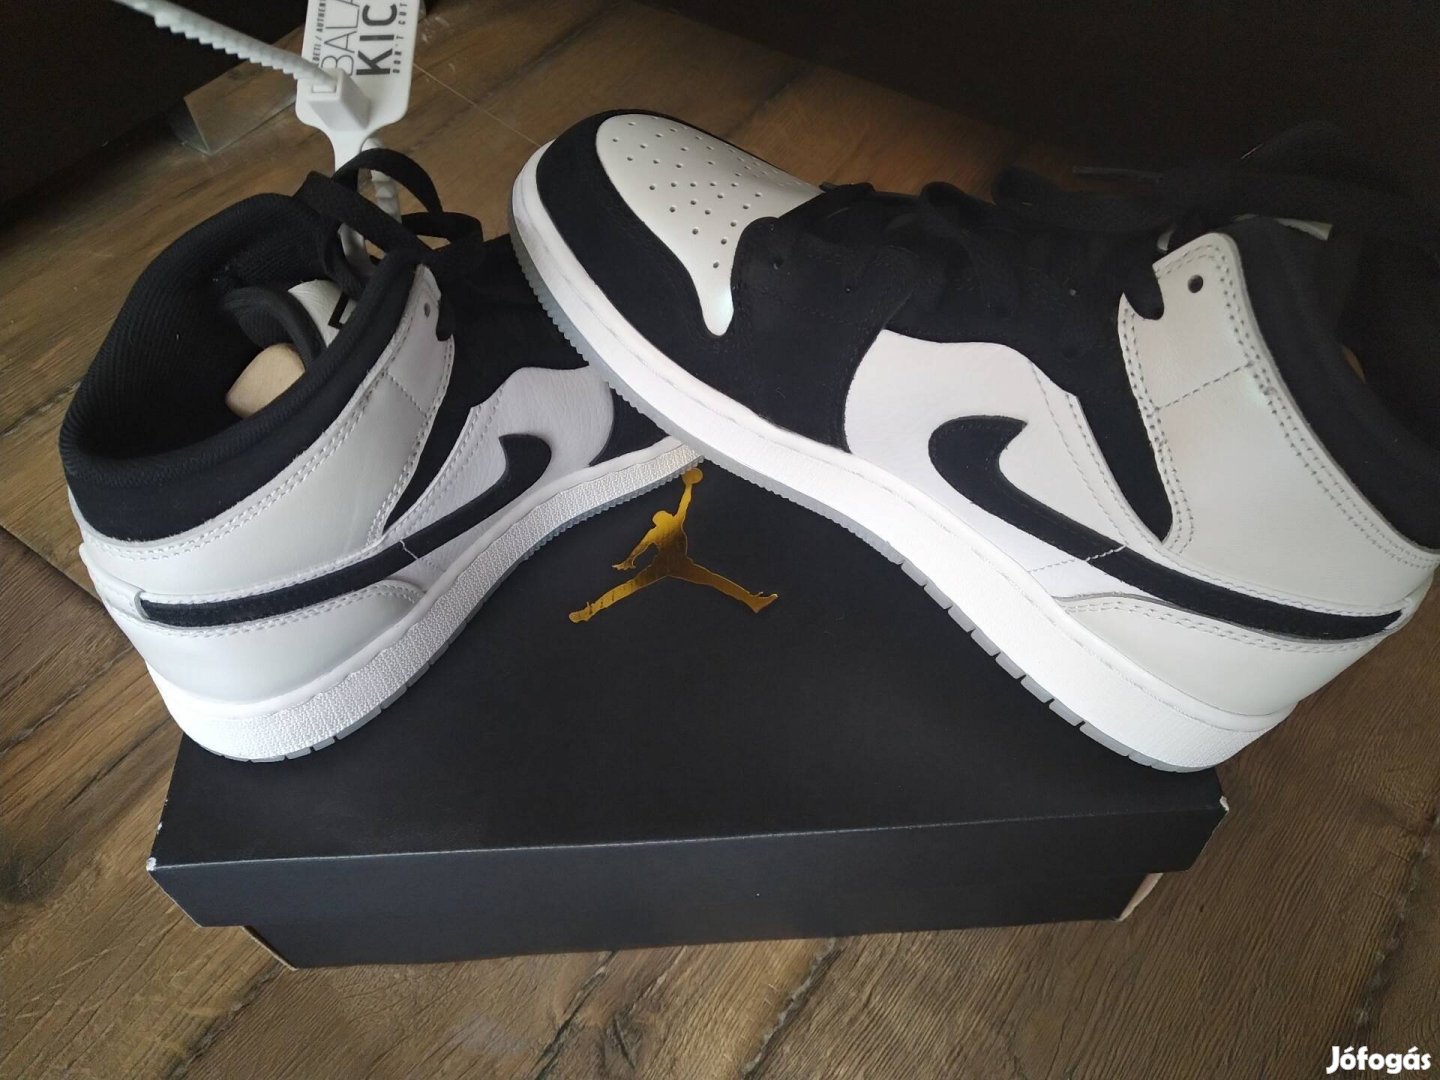 Air Jordan Nike /Balazskicks/ cipő - Sohasem használt!! 